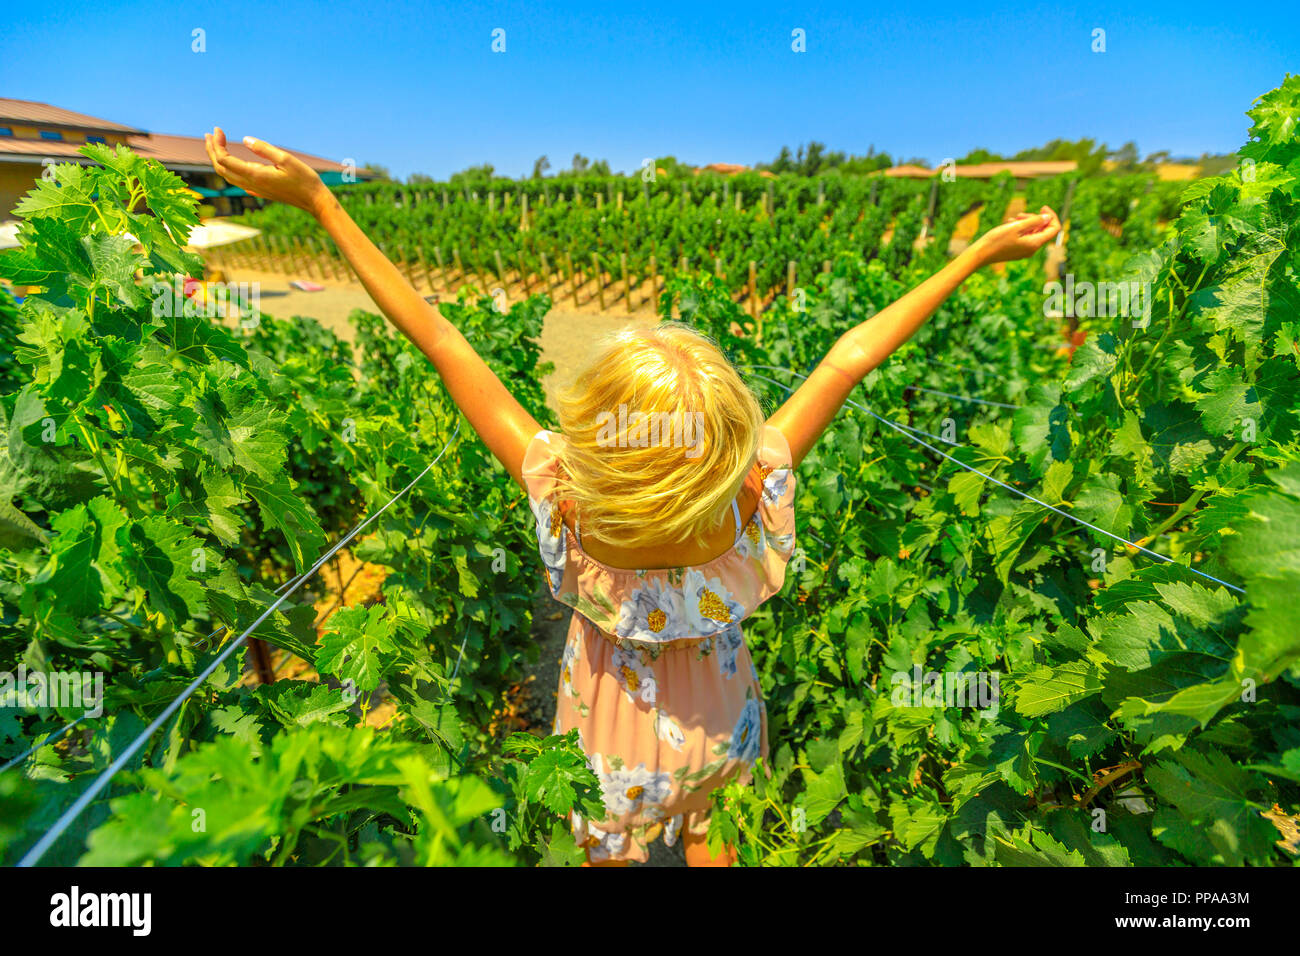 Paysage pittoresque de vineyard winery vendanges. Femme insouciante à bras ouverts dans les rangées de vignes. Tour de dégustation de vin dans la région de Los Olivos, Santa Ynez Valley, au nord de Santa Barbara, Californie, USA. Banque D'Images